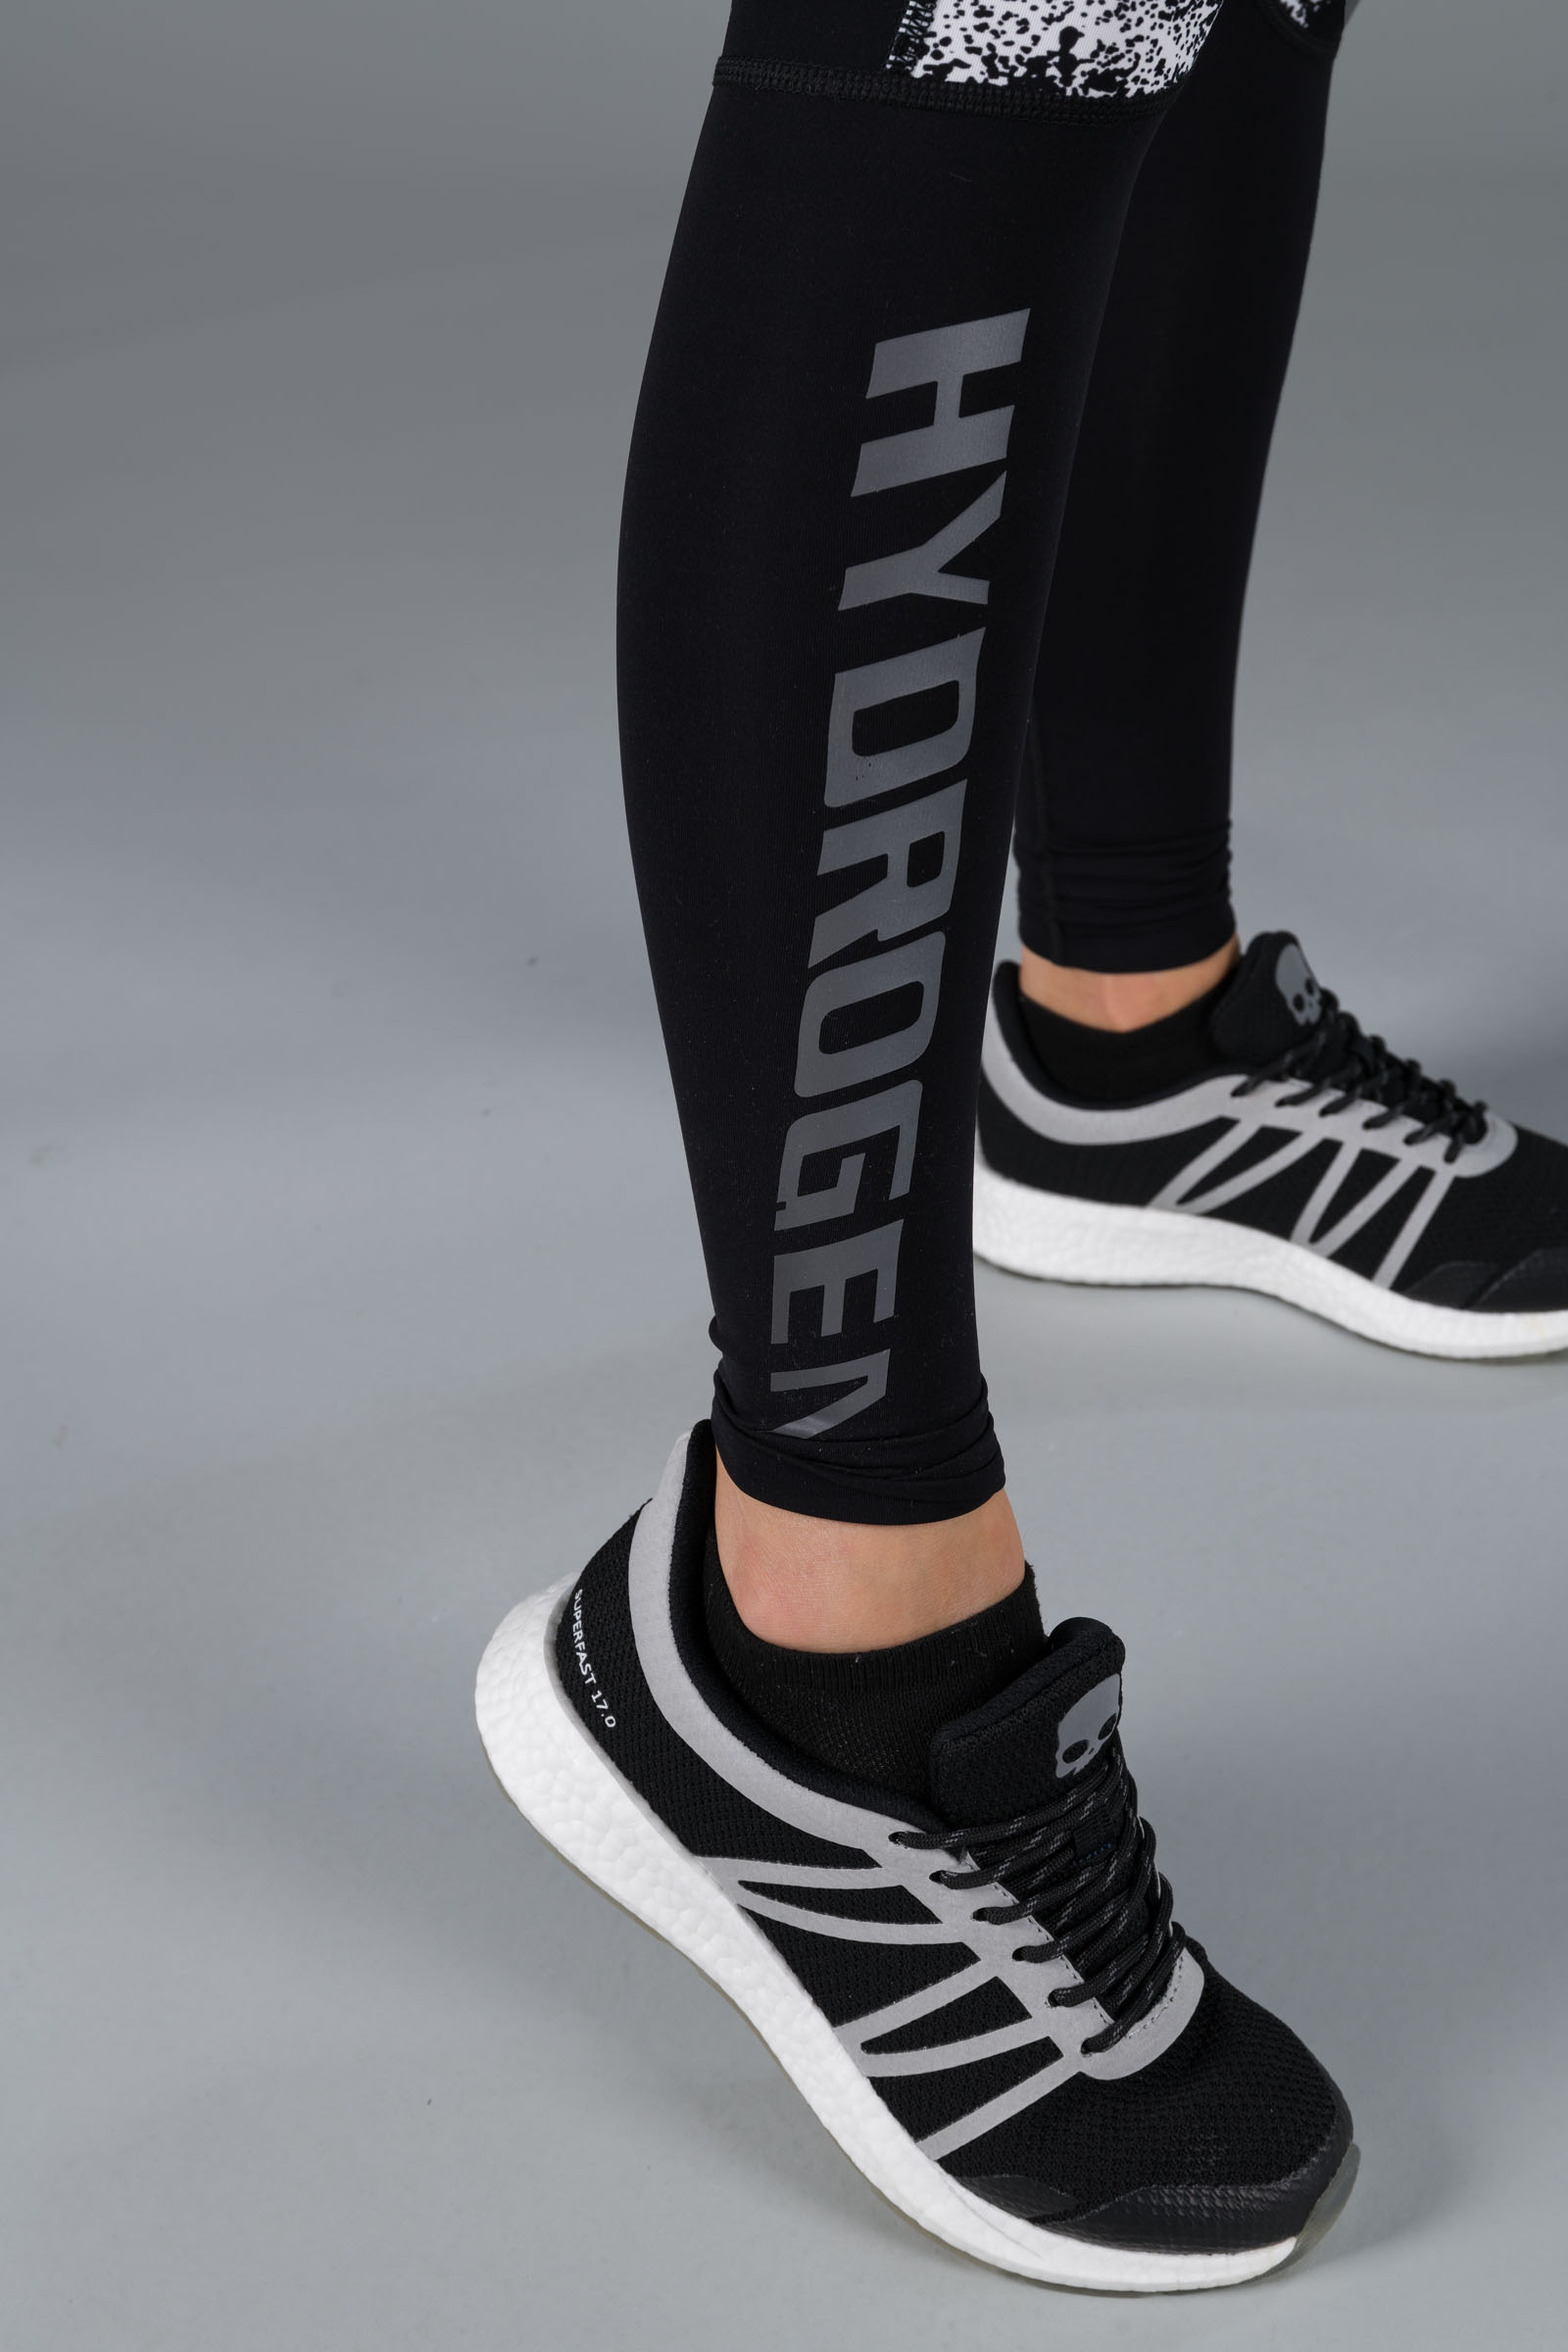 SPRAY LEGGINGS - WHITE/BLACK - Hydrogen - Luxury Sportwear